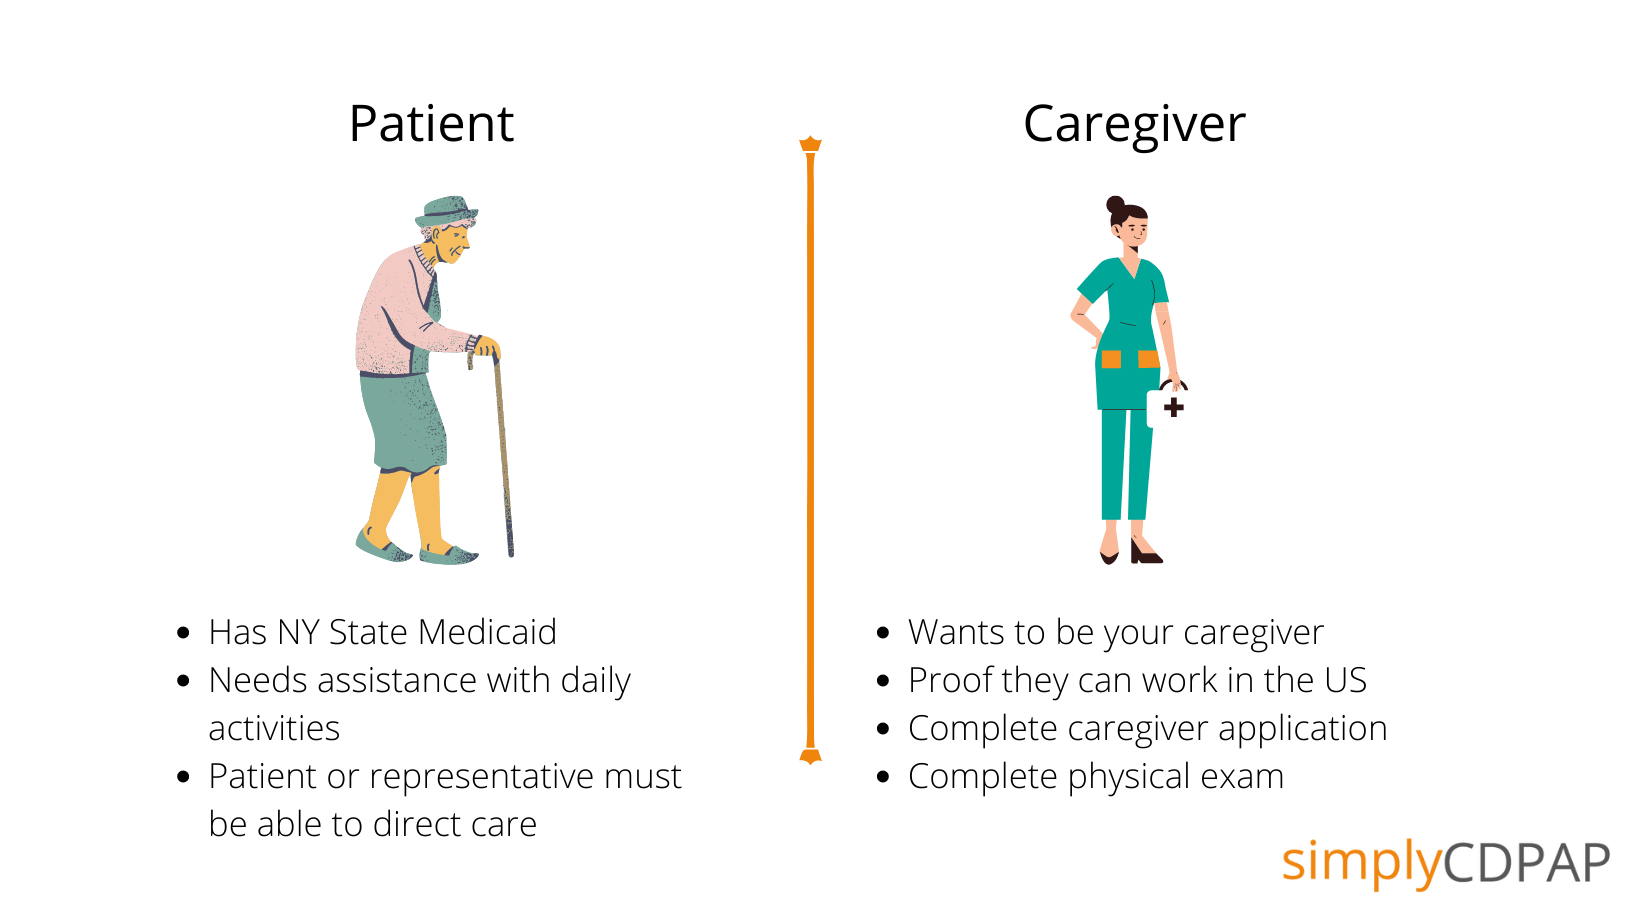 CDPAP patient vs. caregiver